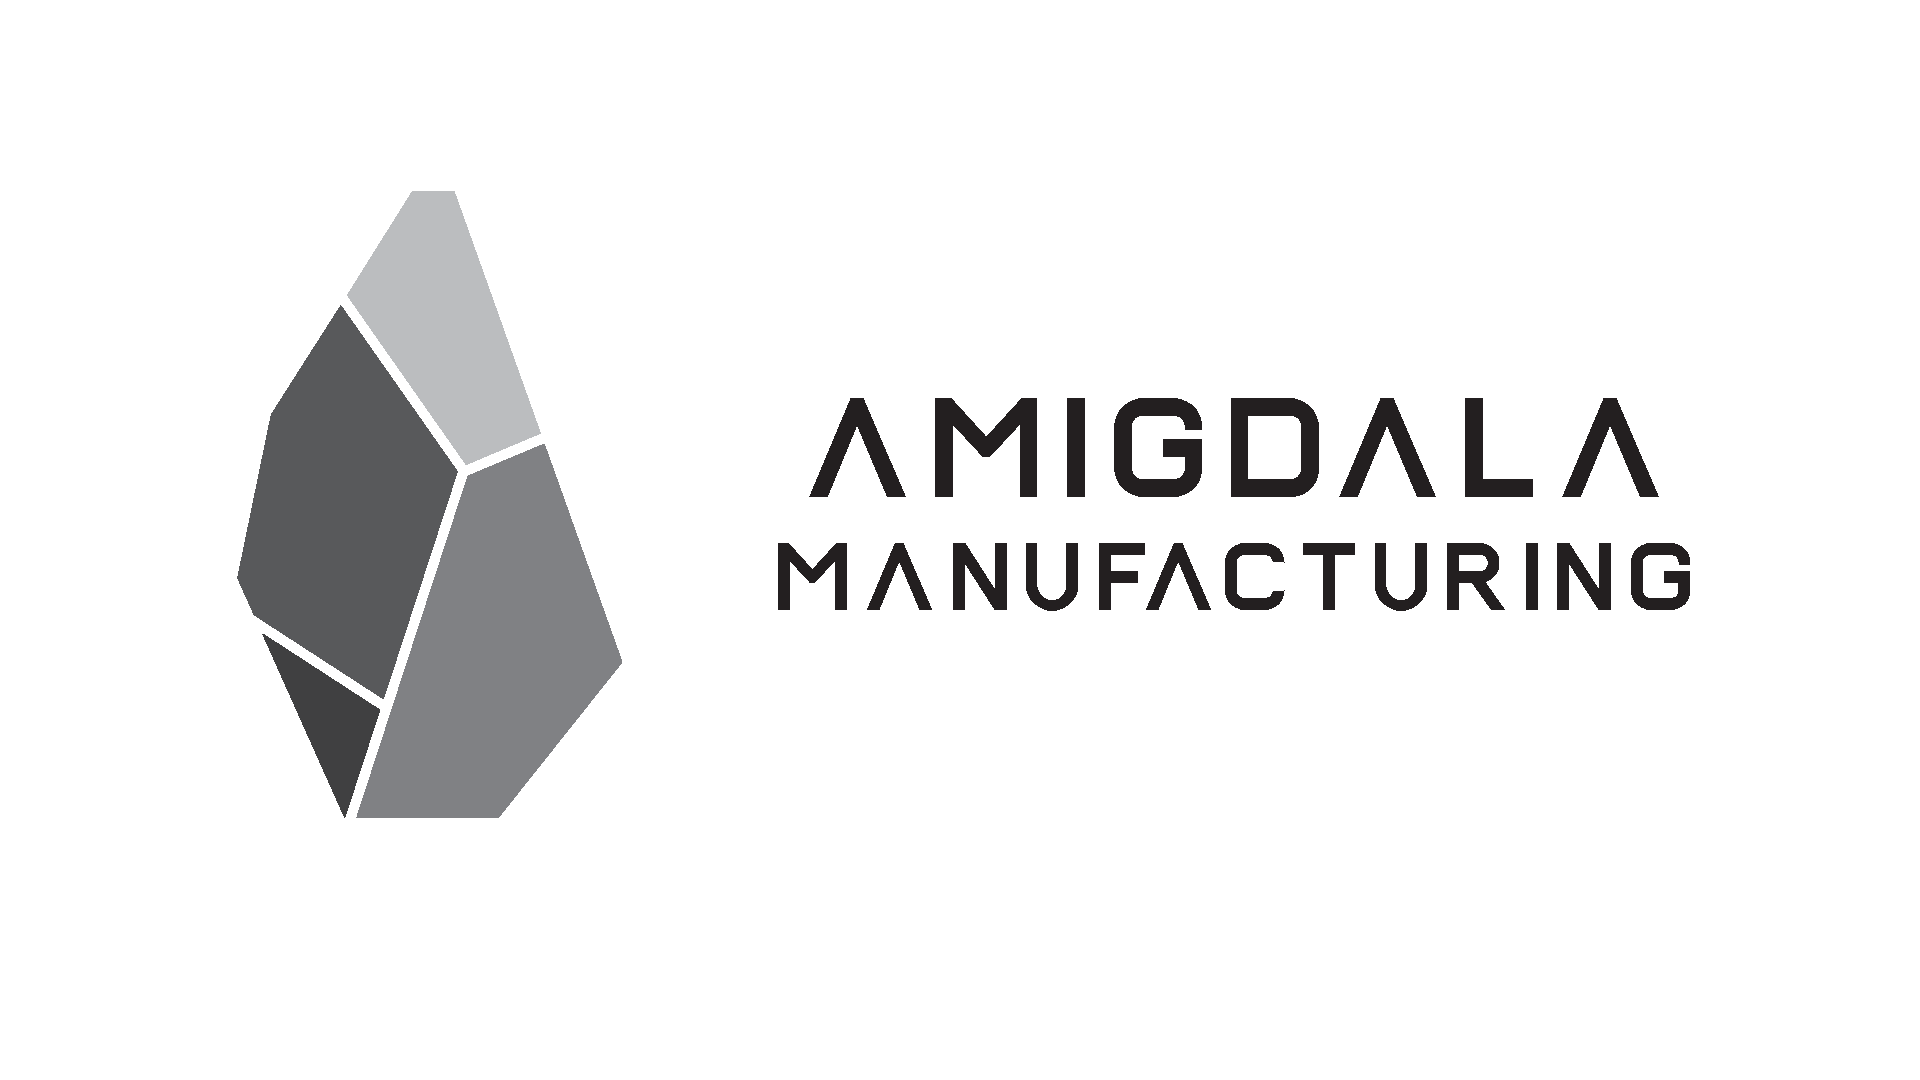 Agmigdala Manufacturing logo